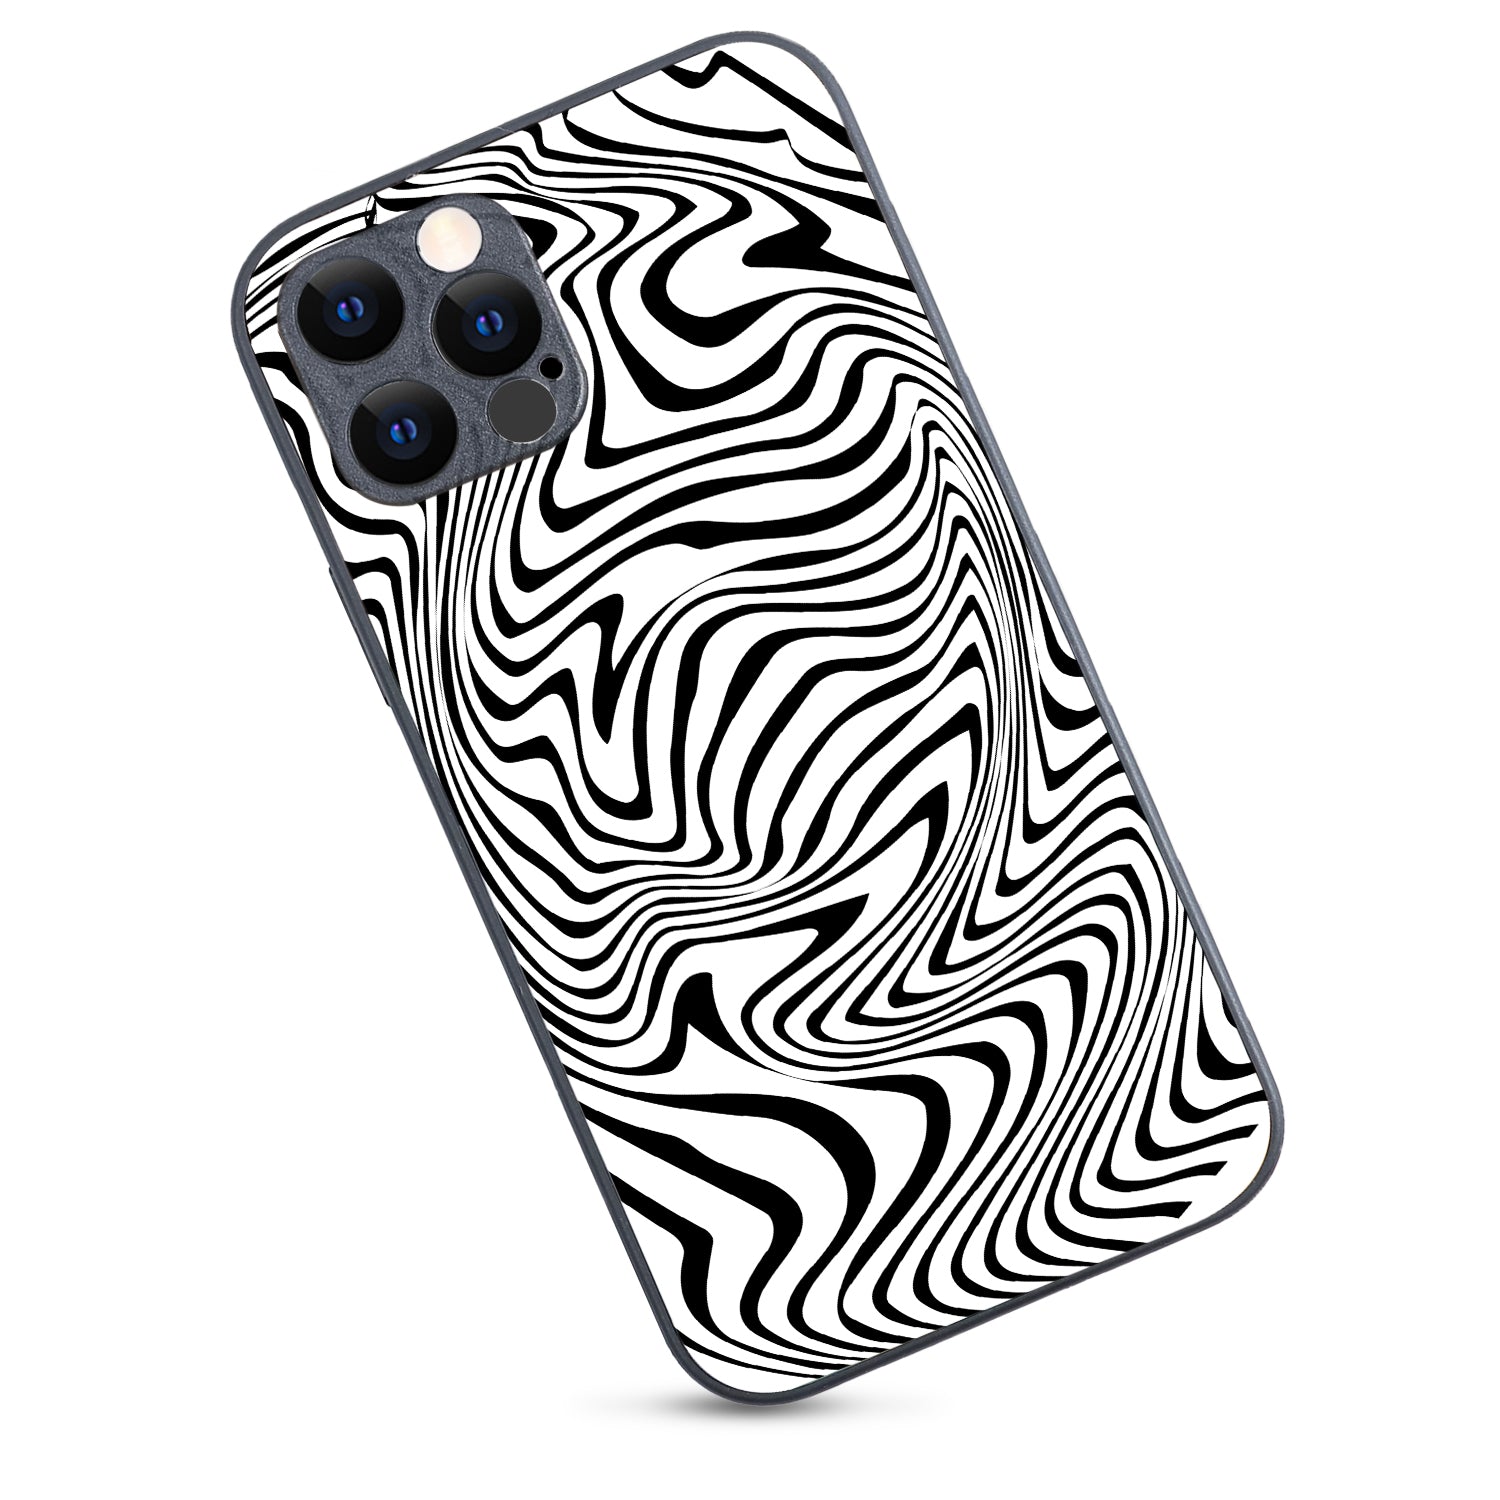 White Zig-Zag Optical Illusion iPhone 12 Pro Case